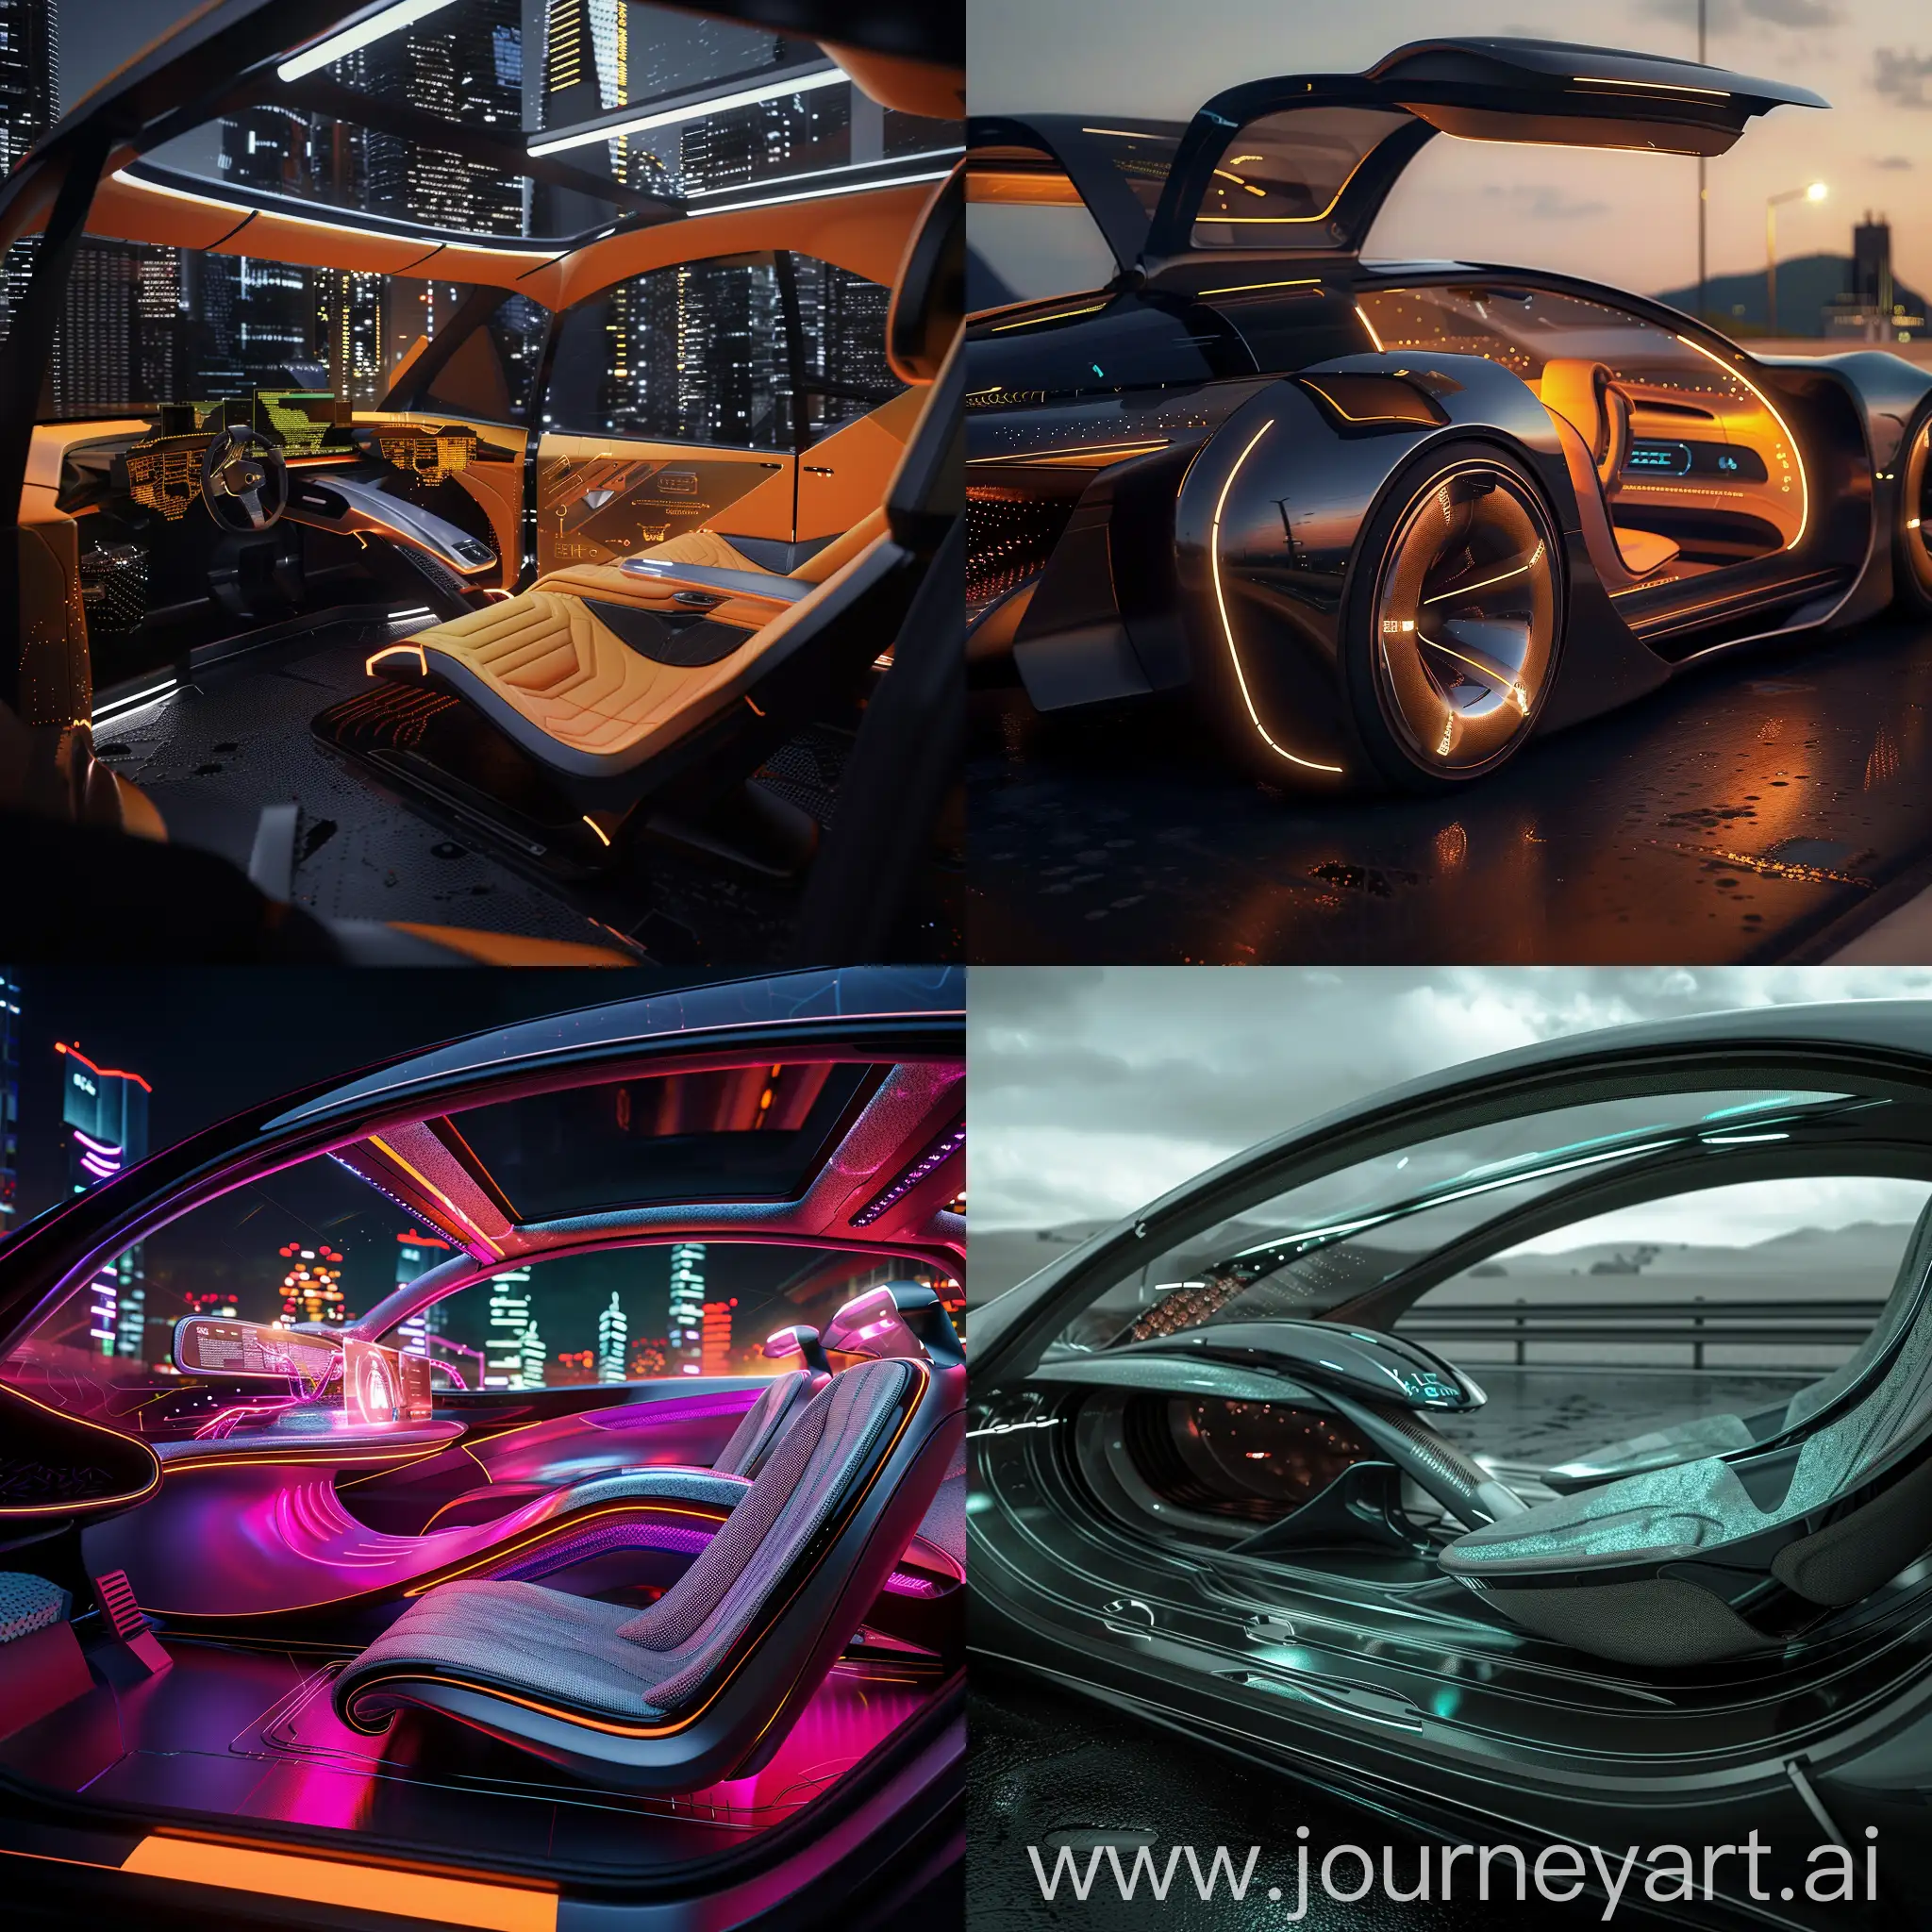 Futuristic-Modular-Car-Interior-with-AI-Assistant-and-Quantum-Features